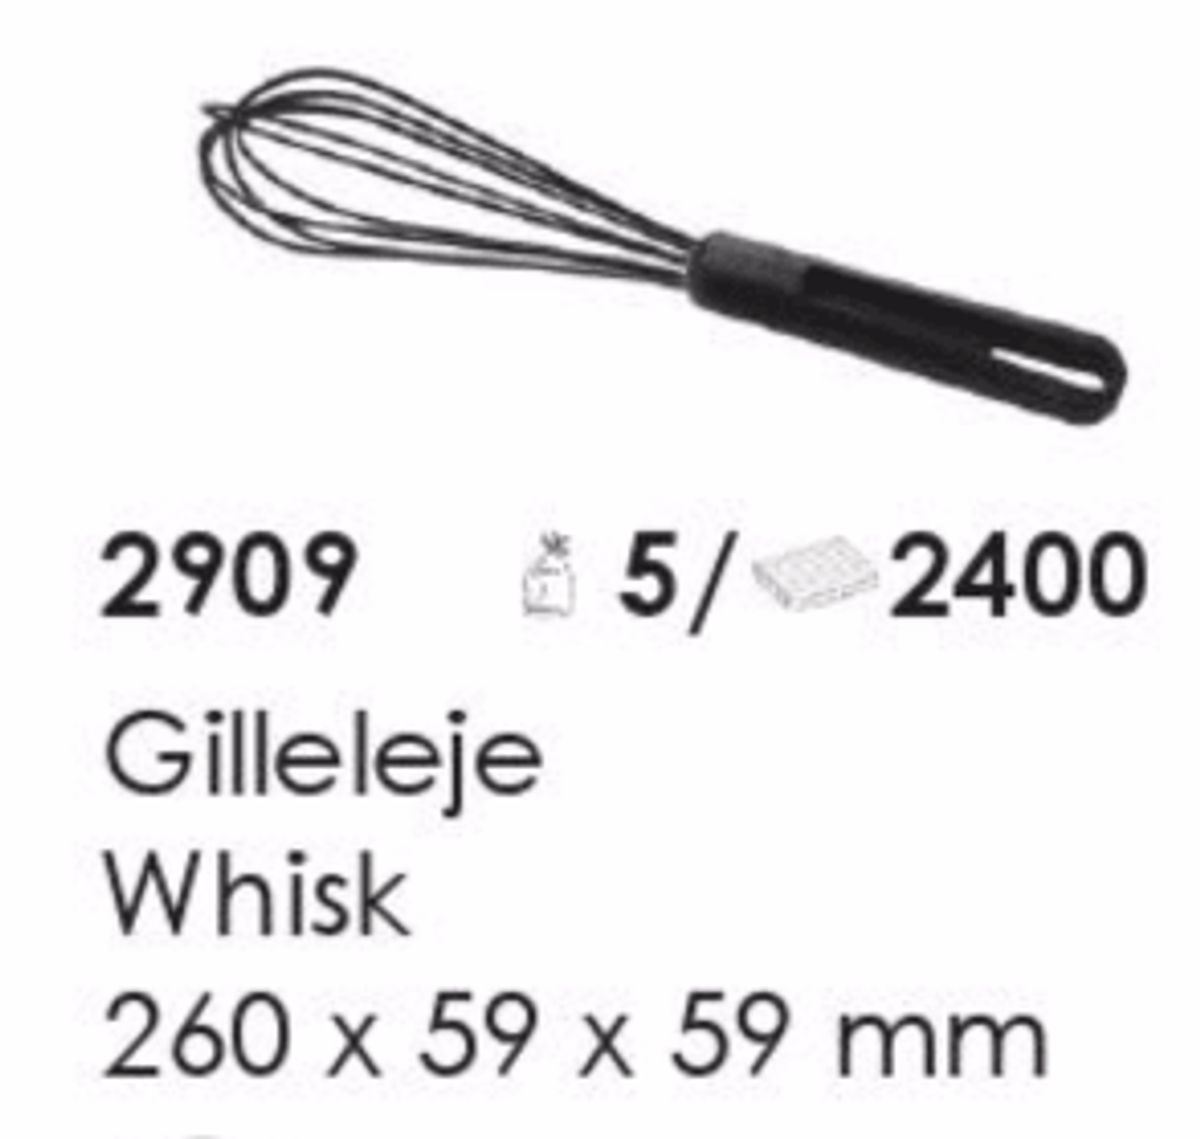 Gilleleje Whisk, artikel nr. 2909 (Piskeris) Foto: Screenshot fra katalog fra Plast Team A/S.